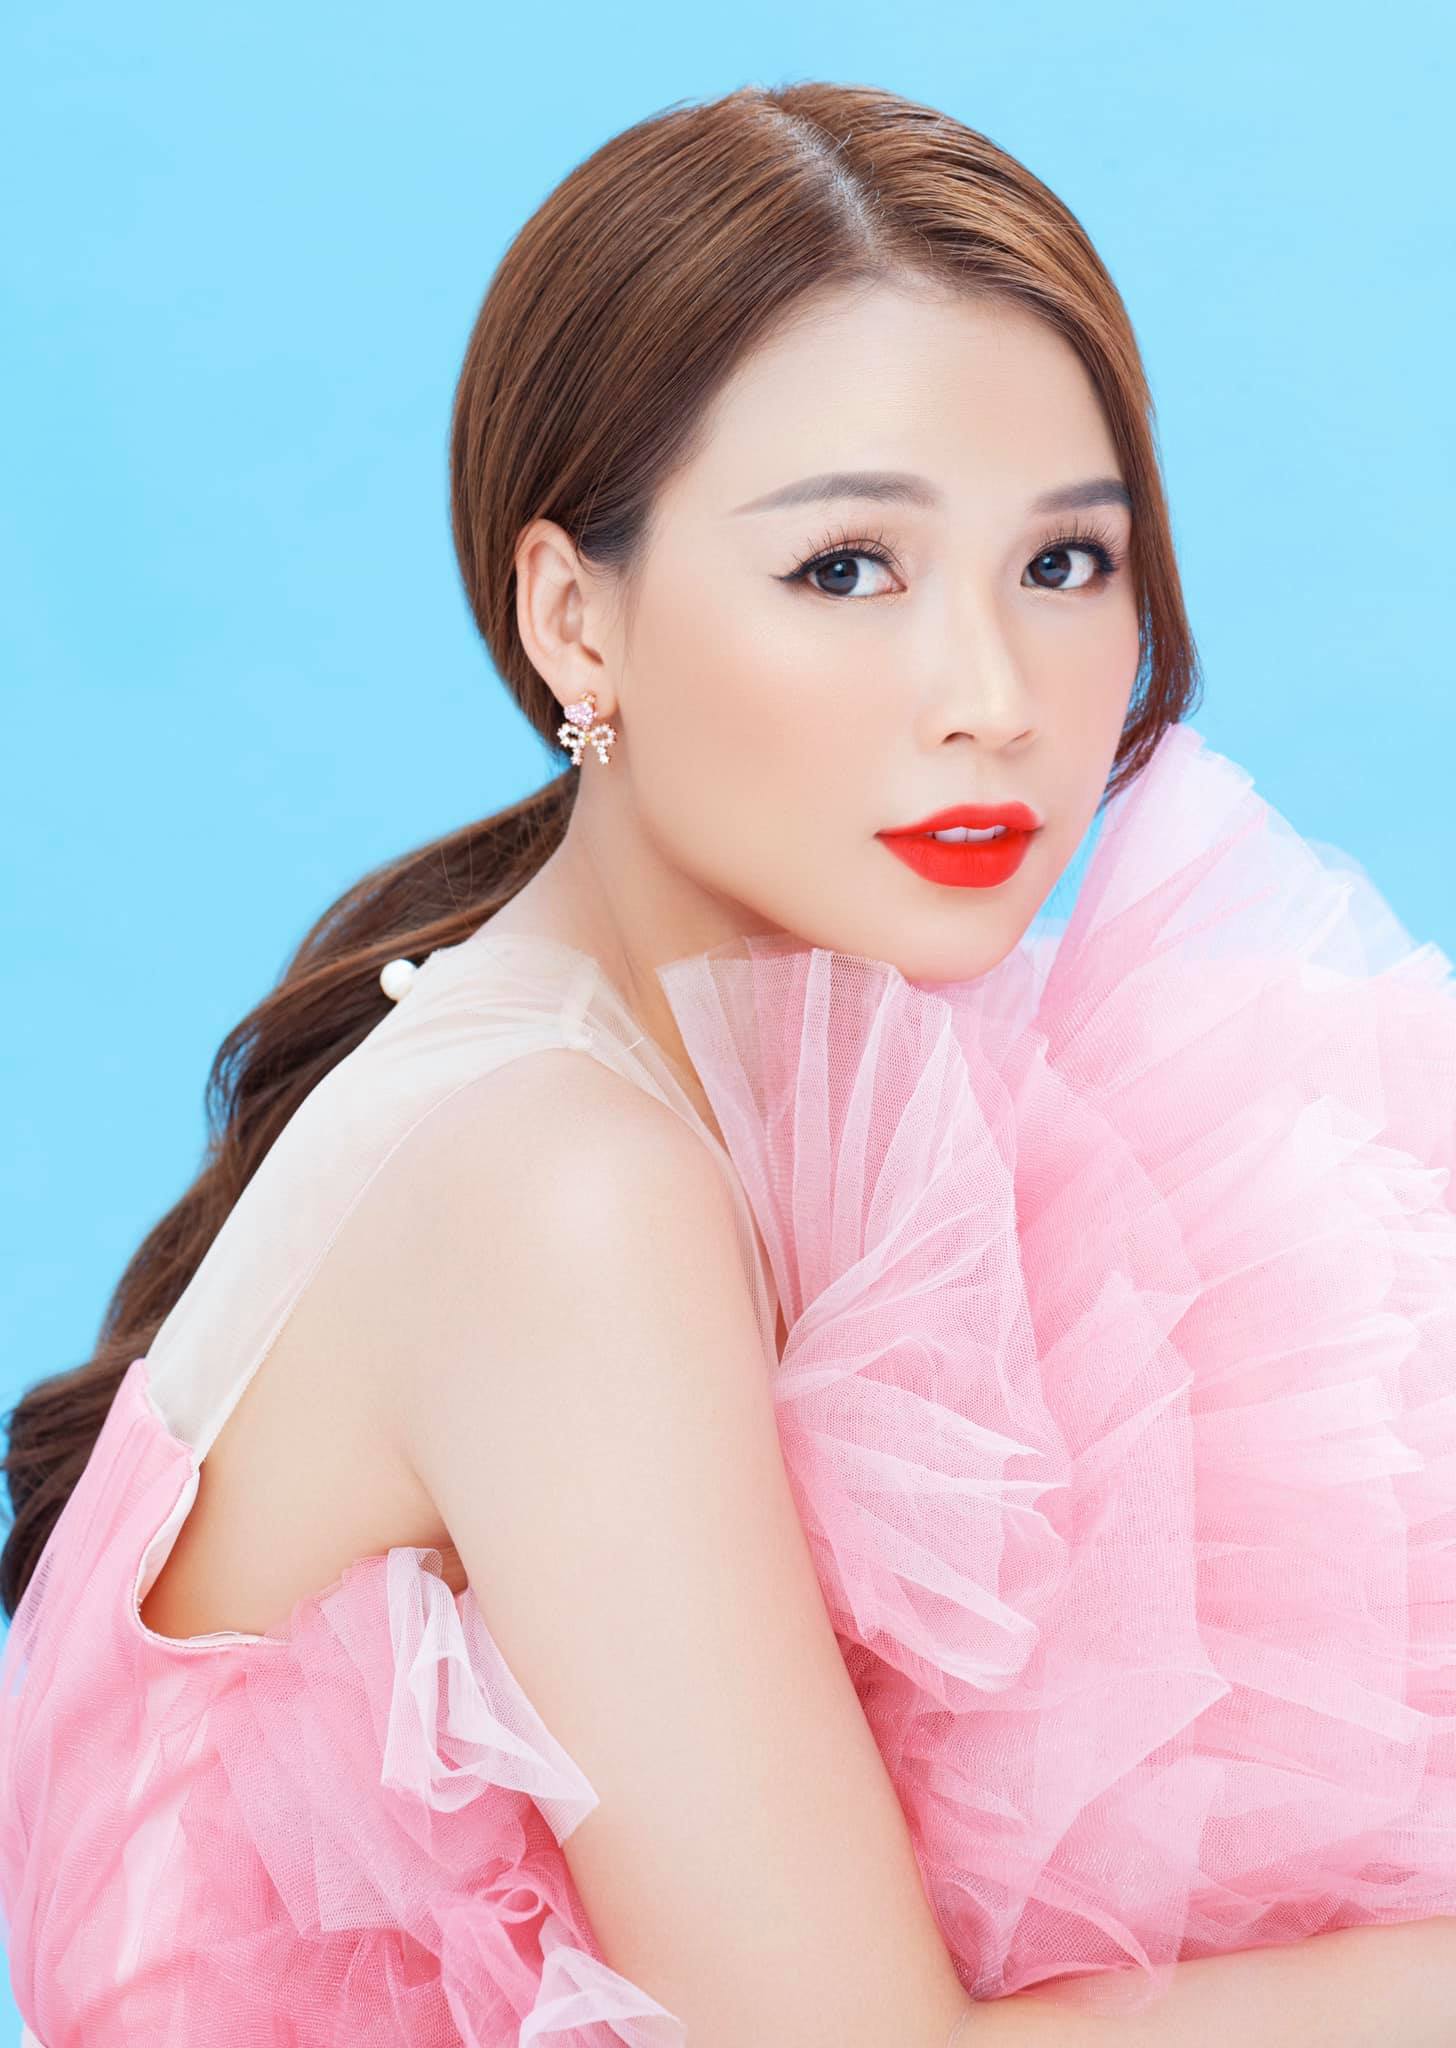 Hoa hậu Tiểu Vy lần đầu nhận vai chính phim điện ảnh - Ảnh 3.